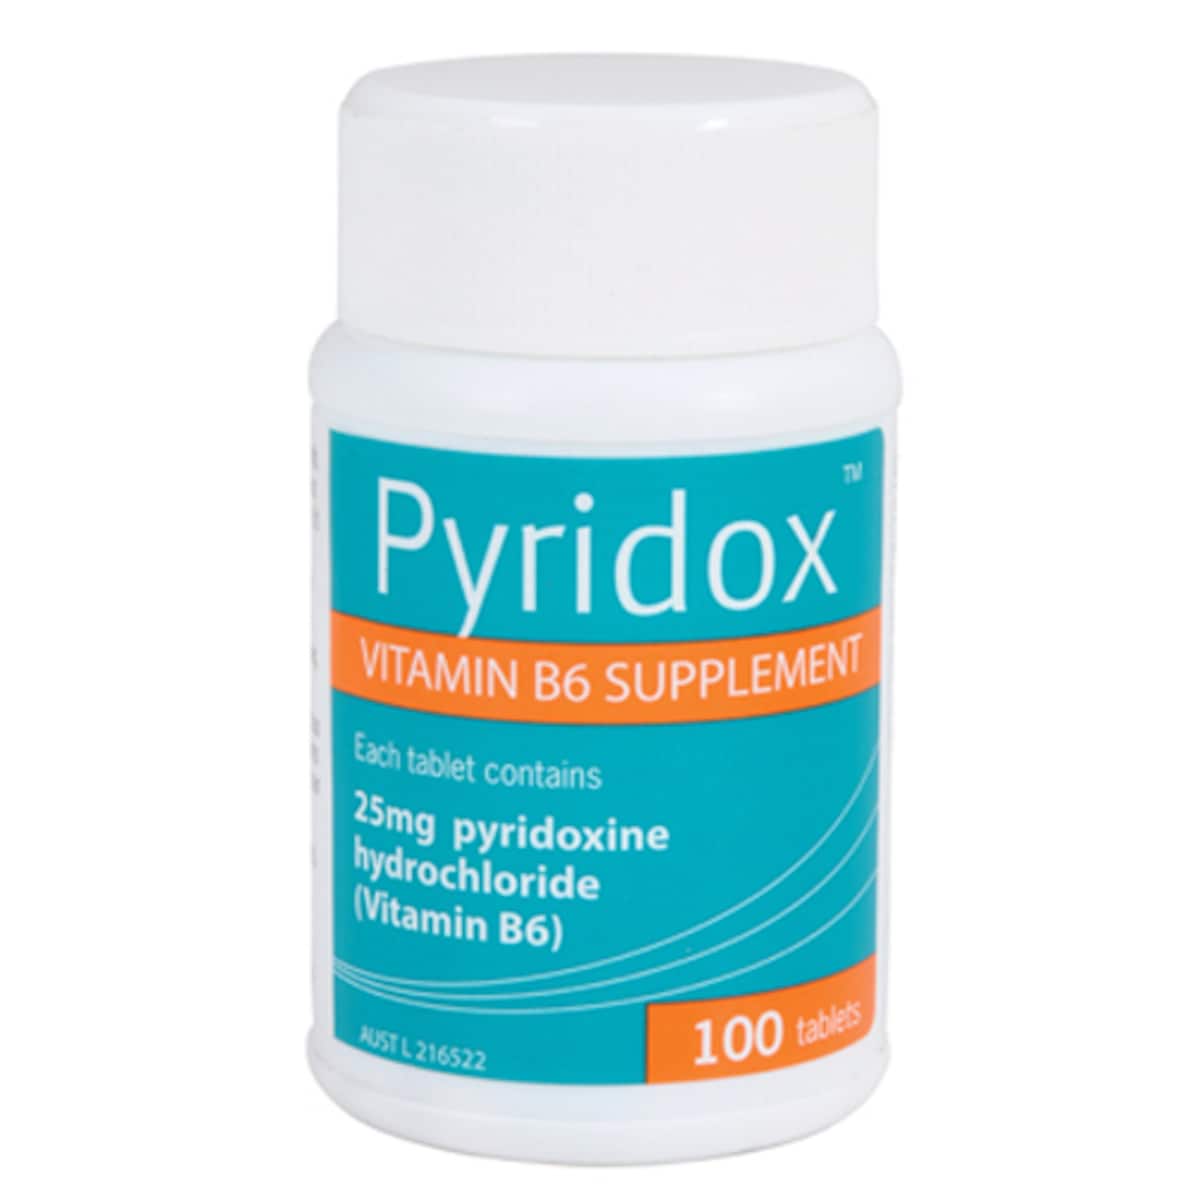 Pyridox Vitamin B6 Supplement 100 Tablets Australia